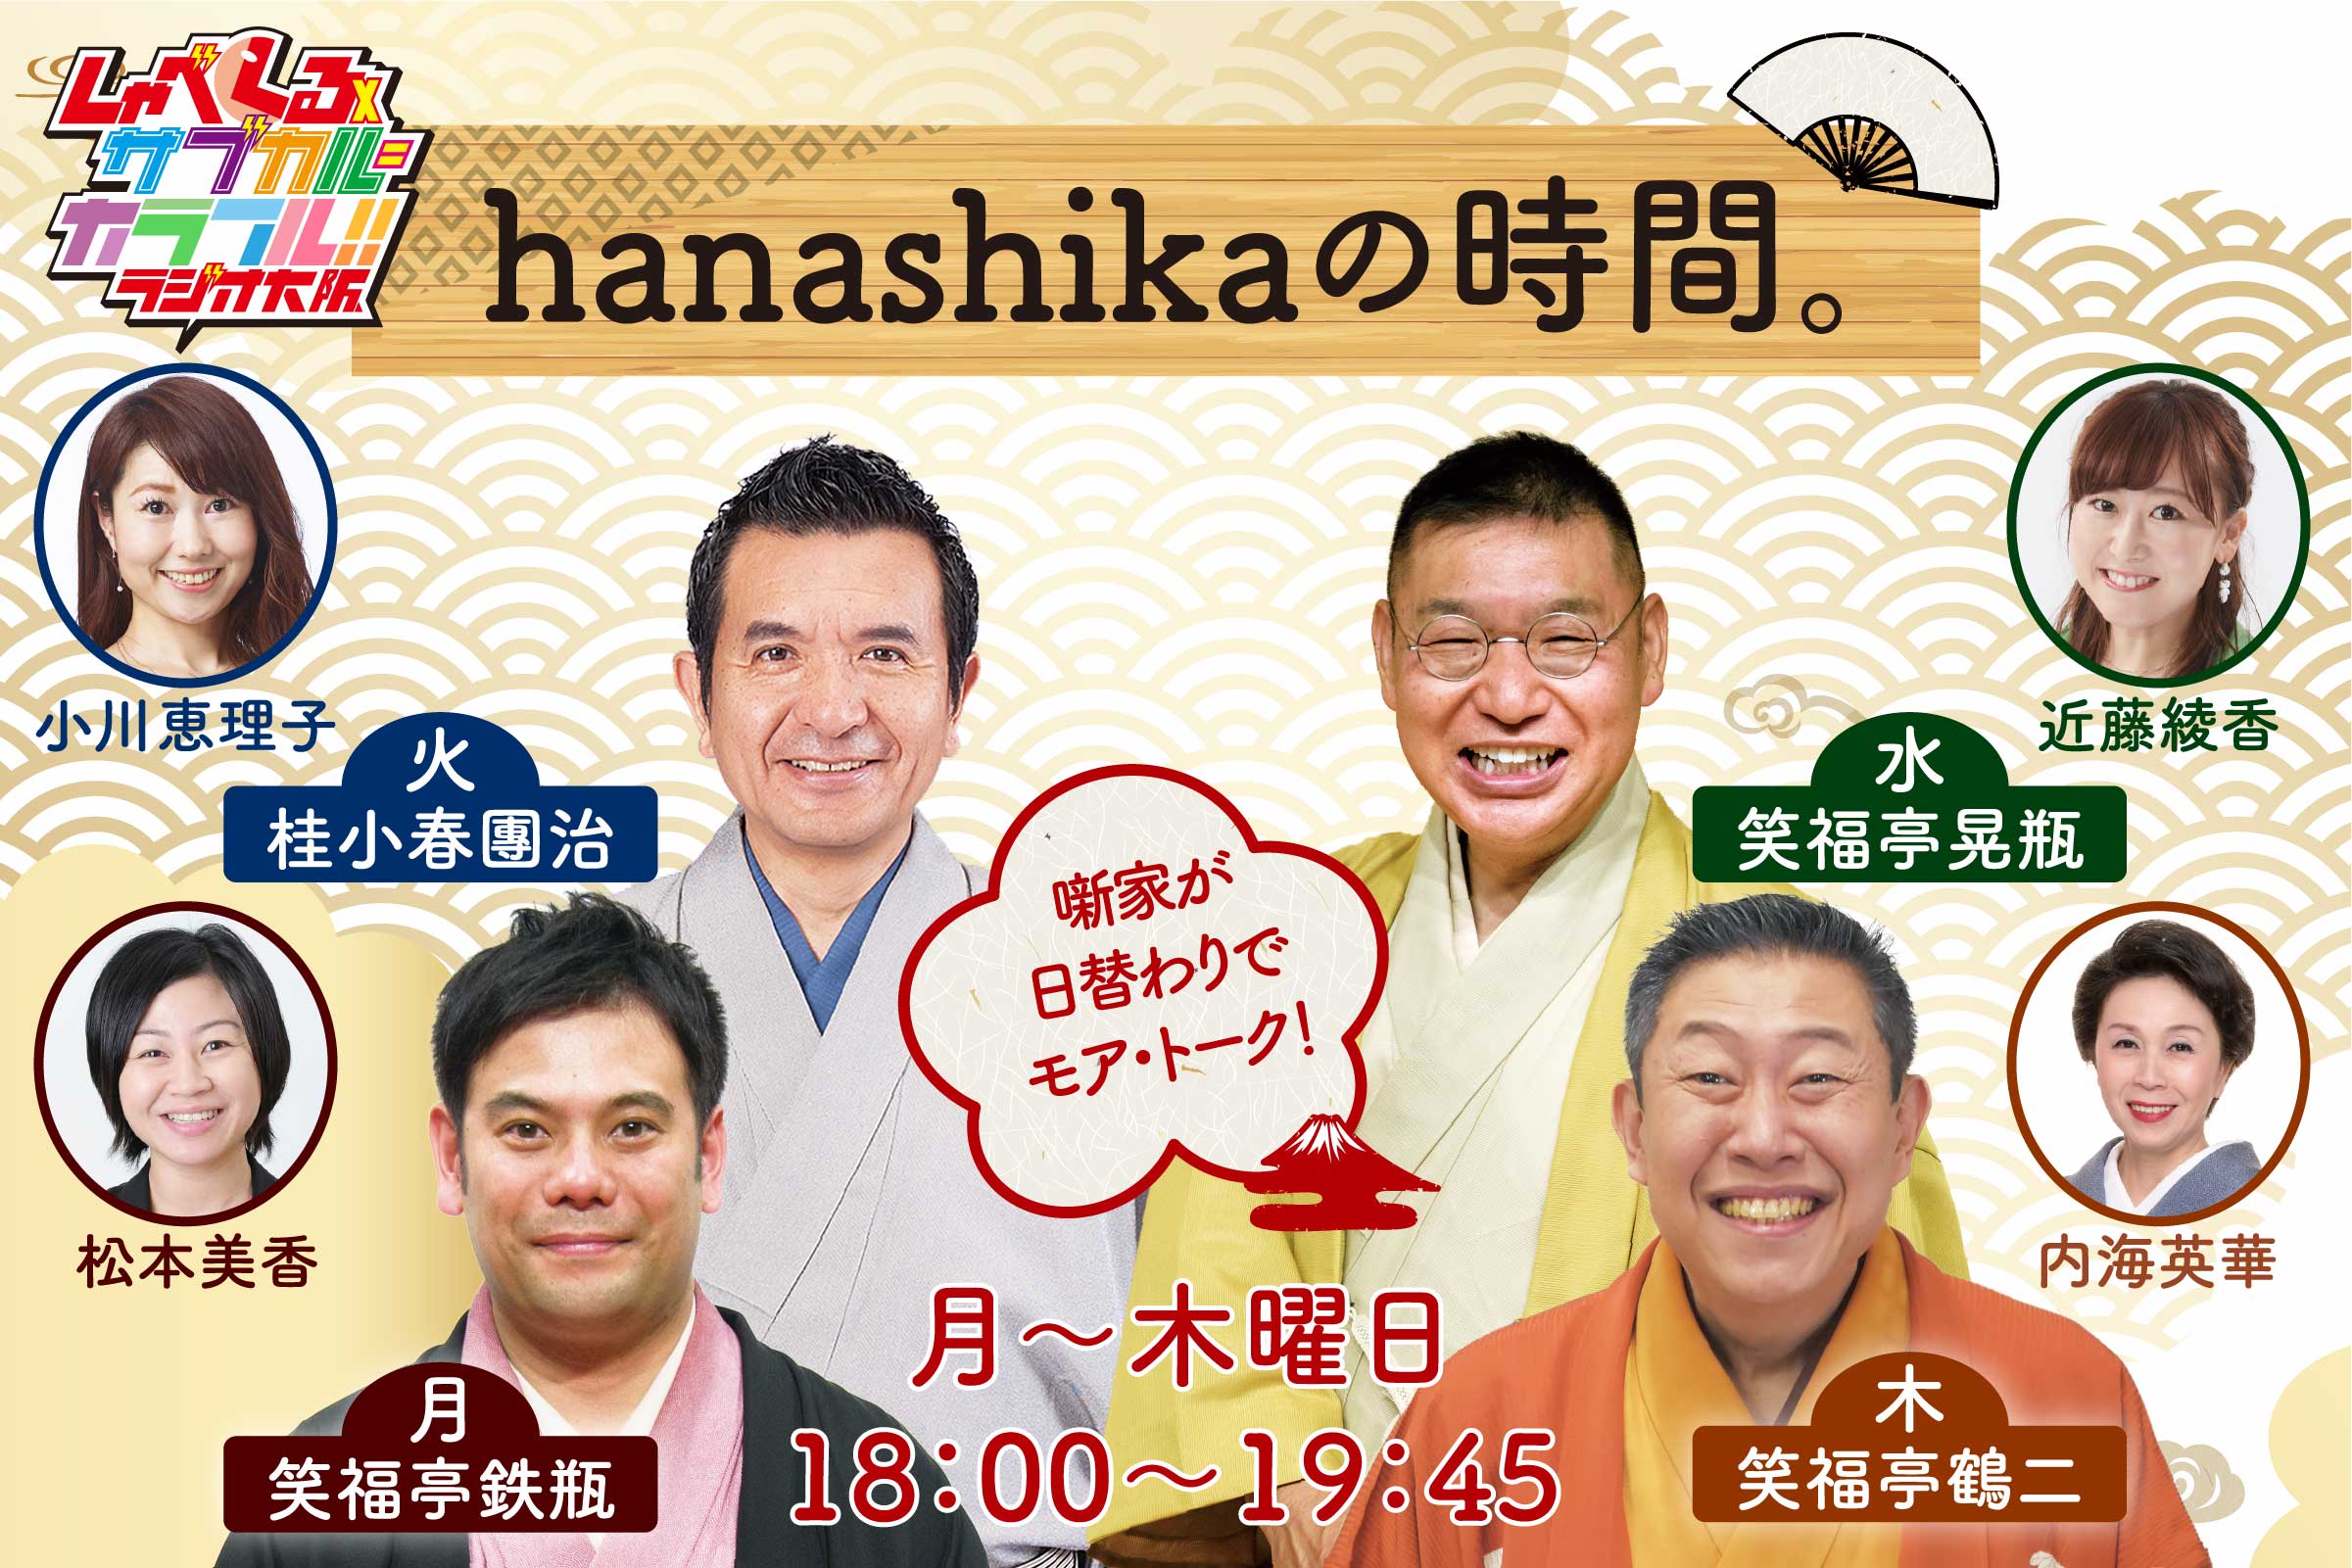 hanashikaの時間。